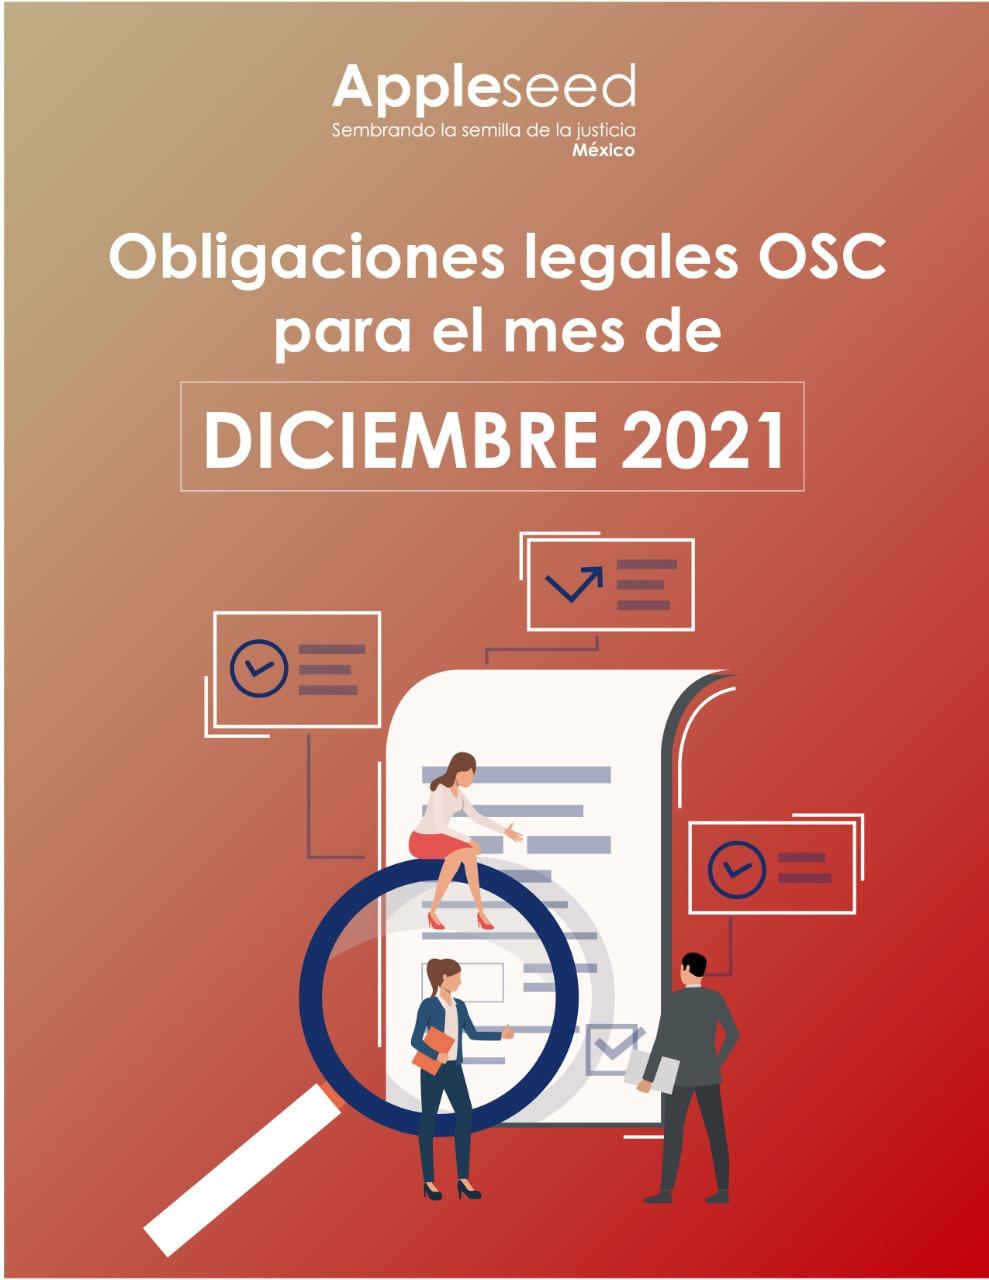 Obligaciones legales OSC para el mes de diciembre 2021